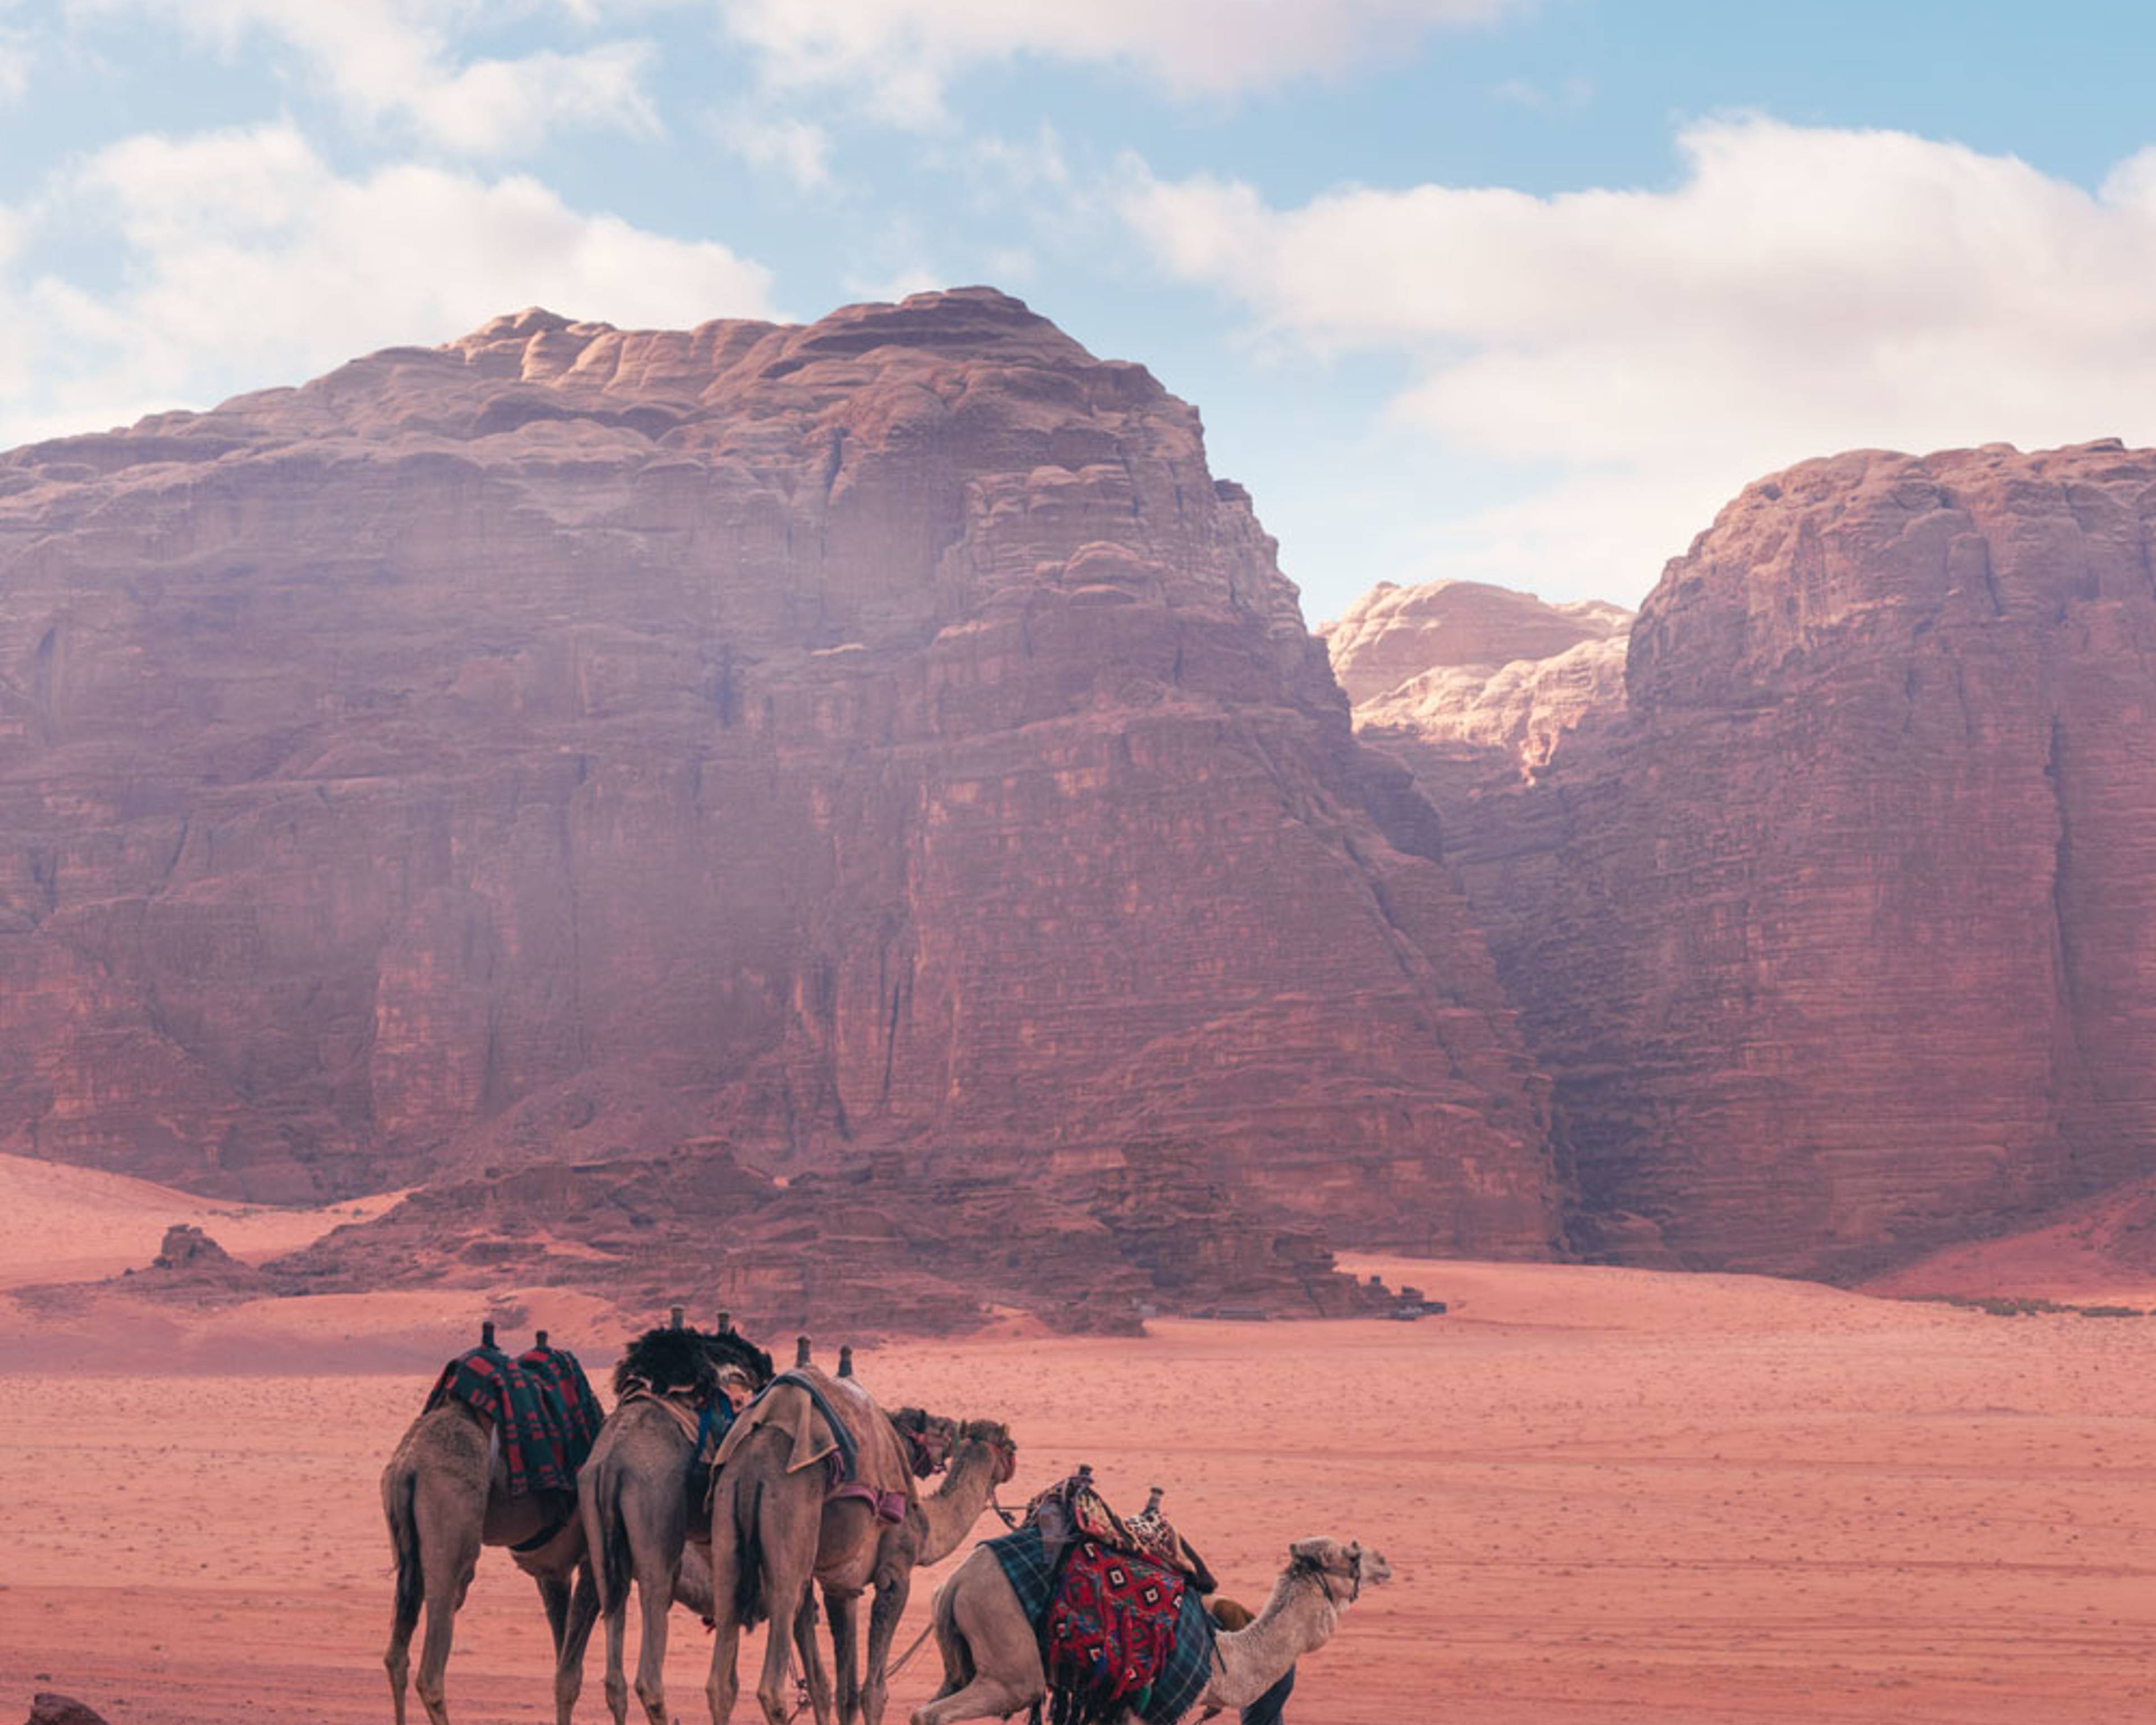 Crea il tuo viaggio su misura nel deserto in Giordania